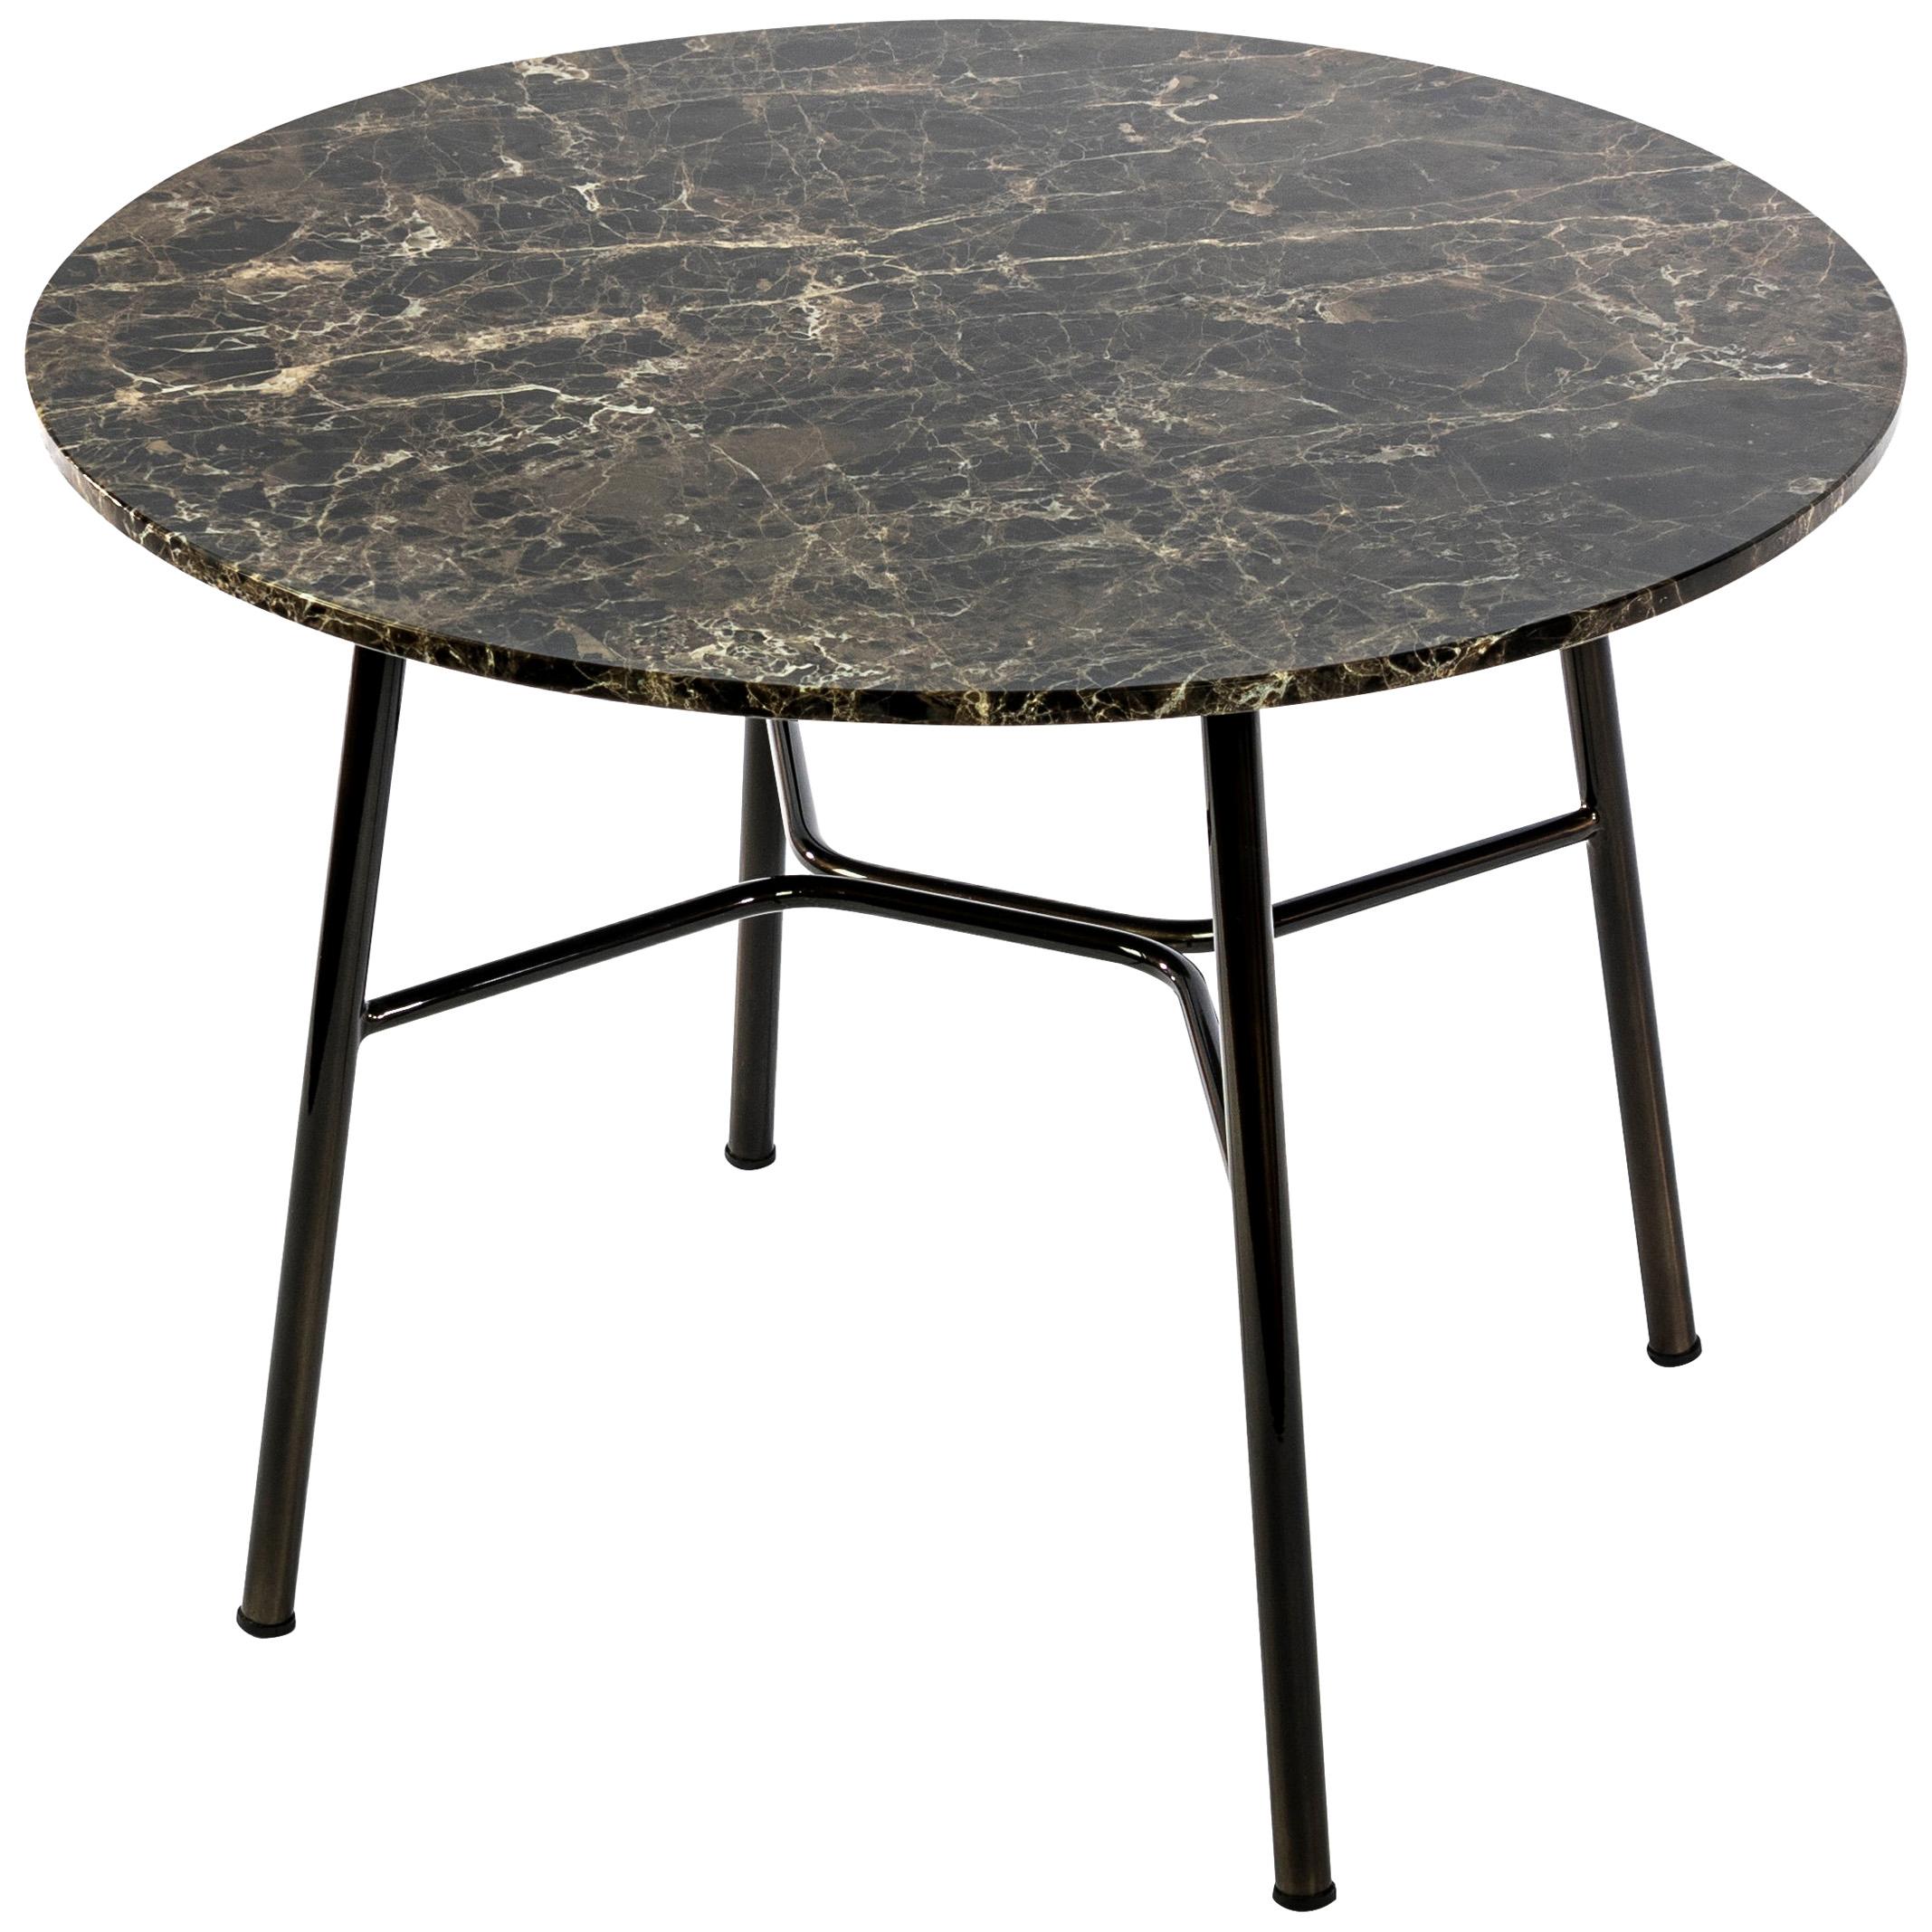 Petite table Yuki, cadre métallique, rond, couleur marron, design, table basse, marbre en vente